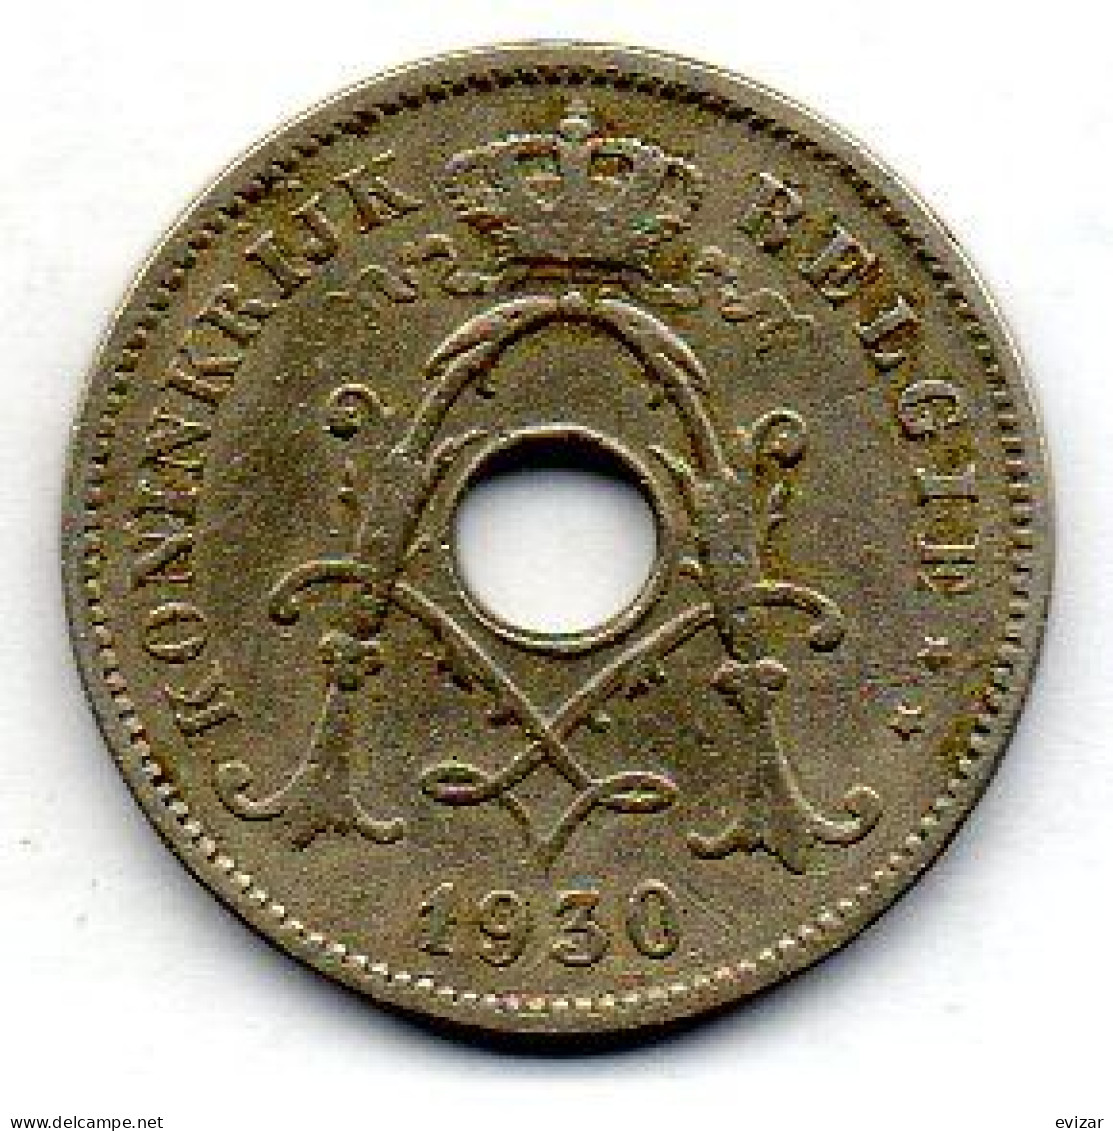 BELGIUM - 10 Centimes, Nickel-Brass, Year 1930, KM # 96, Dutch Legend - 10 Cent